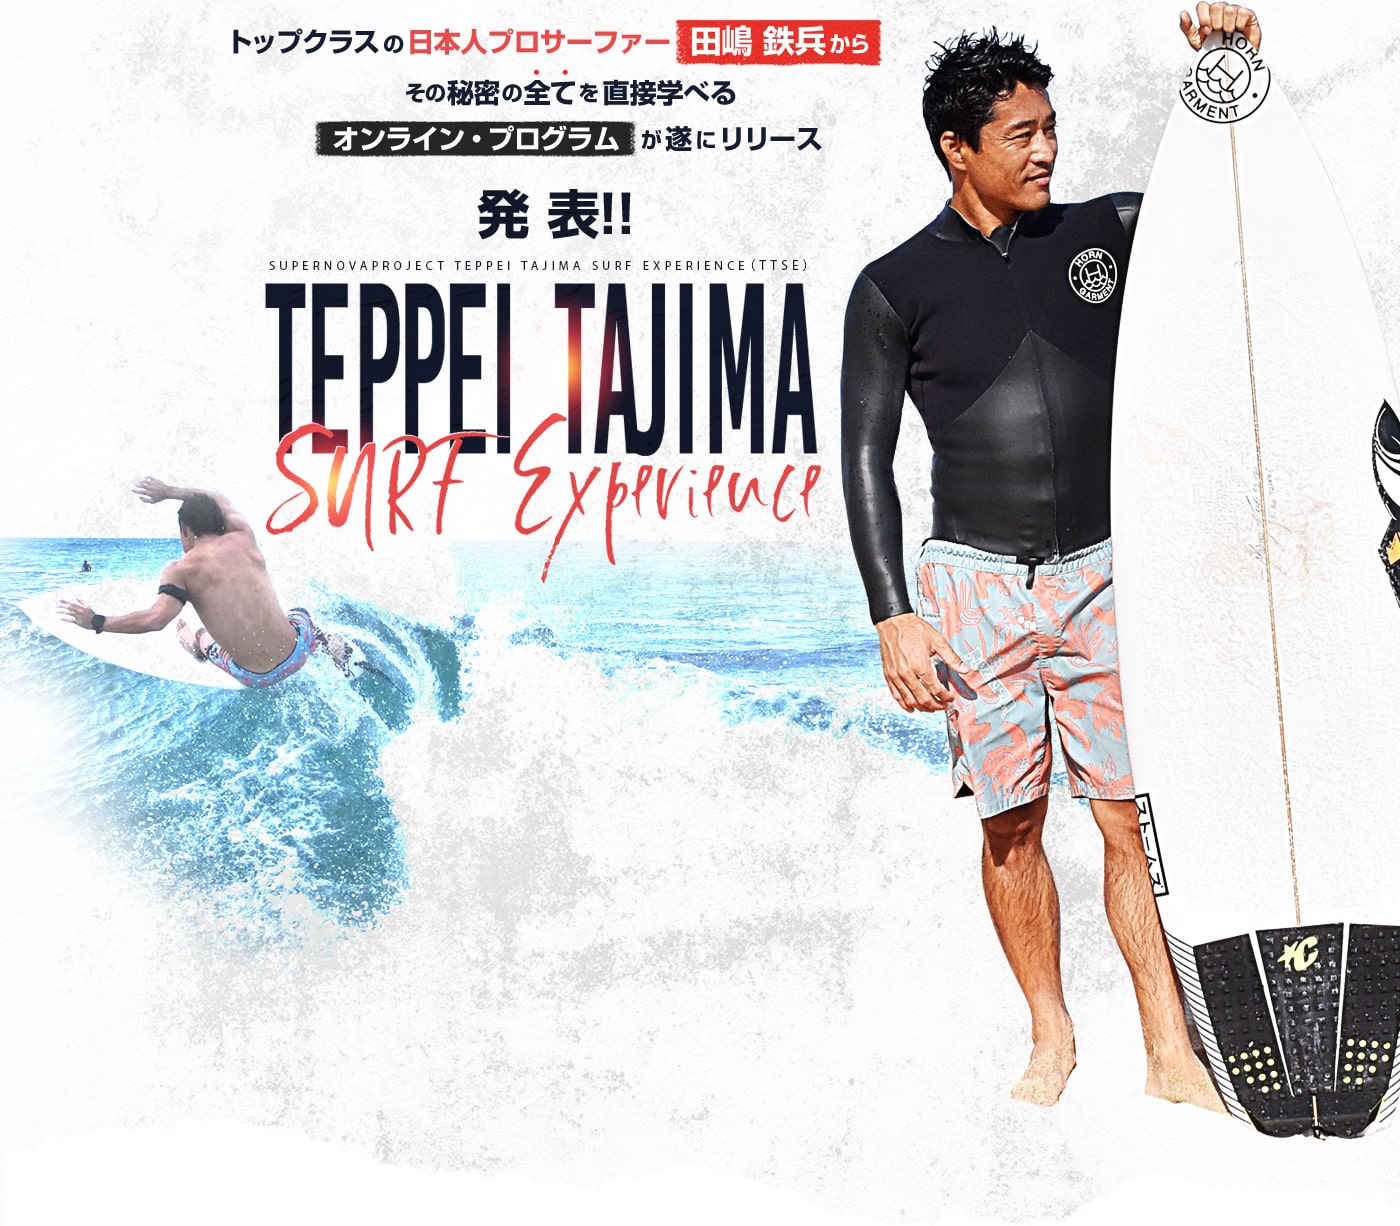 トップクラスの日本人プロサーファー田嶋 鉄兵からその秘密の全てを直接学べるオンライン・プログラムが遂にリリース 発表！！ TEPPEI TAJIMA SURF Experience